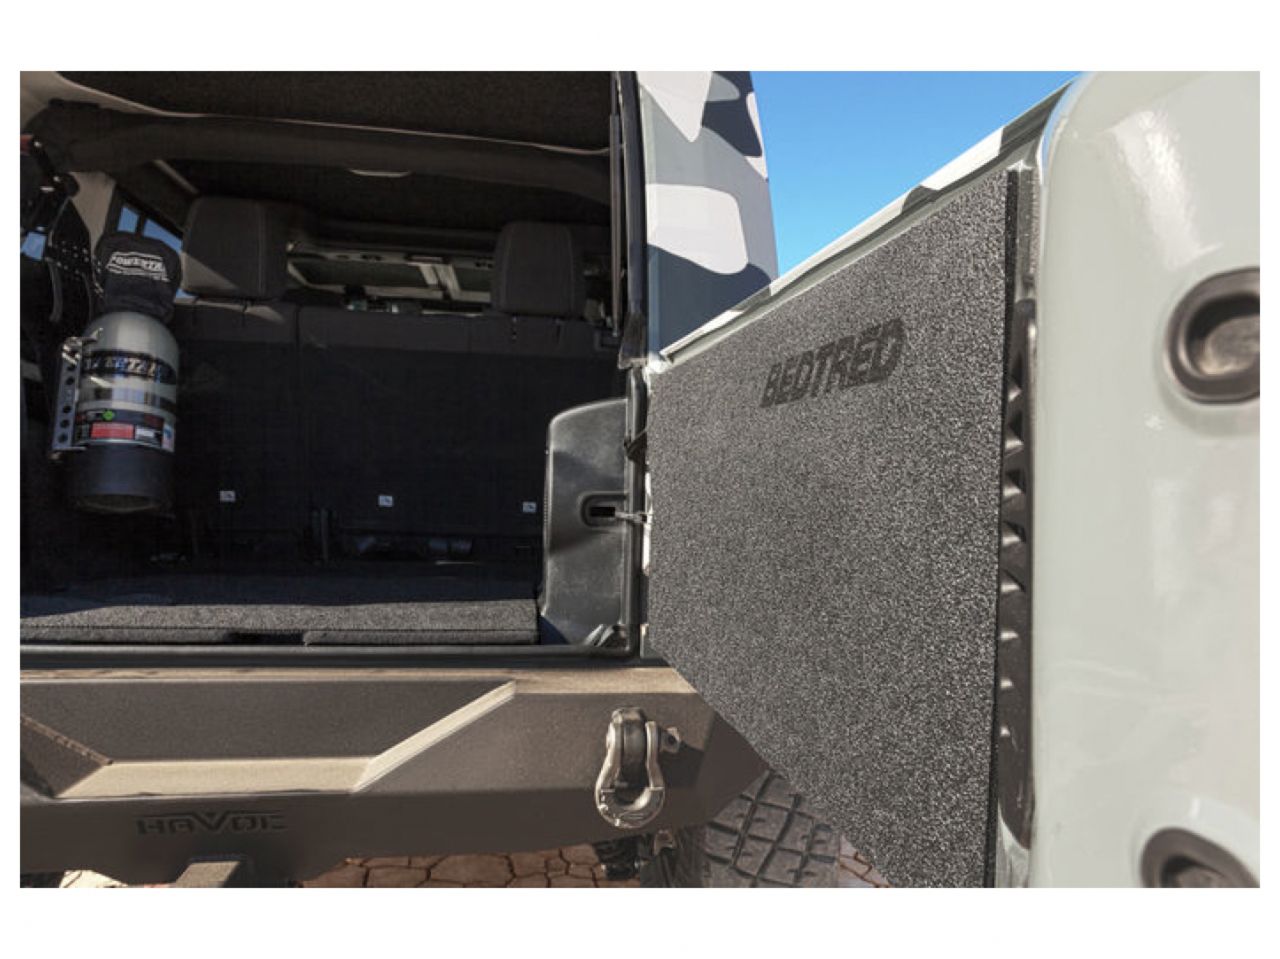 Bedrug Bedtred Jeep Tailgate Liner